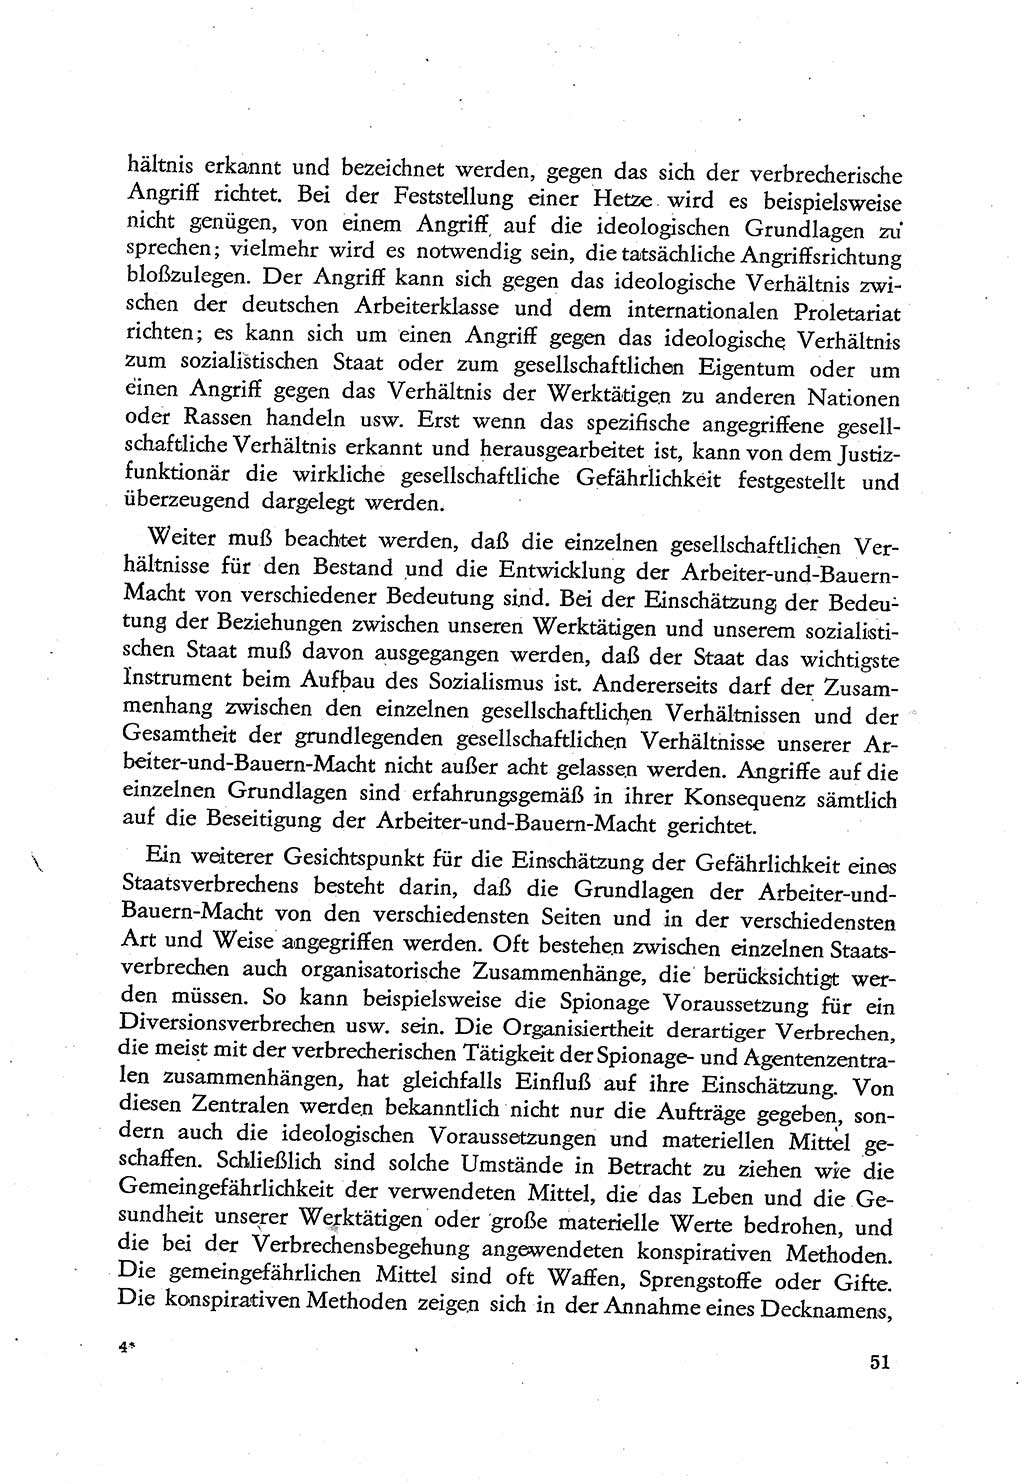 Beiträge zum Strafrecht [Deutsche Demokratische Republik (DDR)], Staatsverbrechen 1959, Seite 51 (Beitr. Strafr. DDR St.-Verbr. 1959, S. 51)